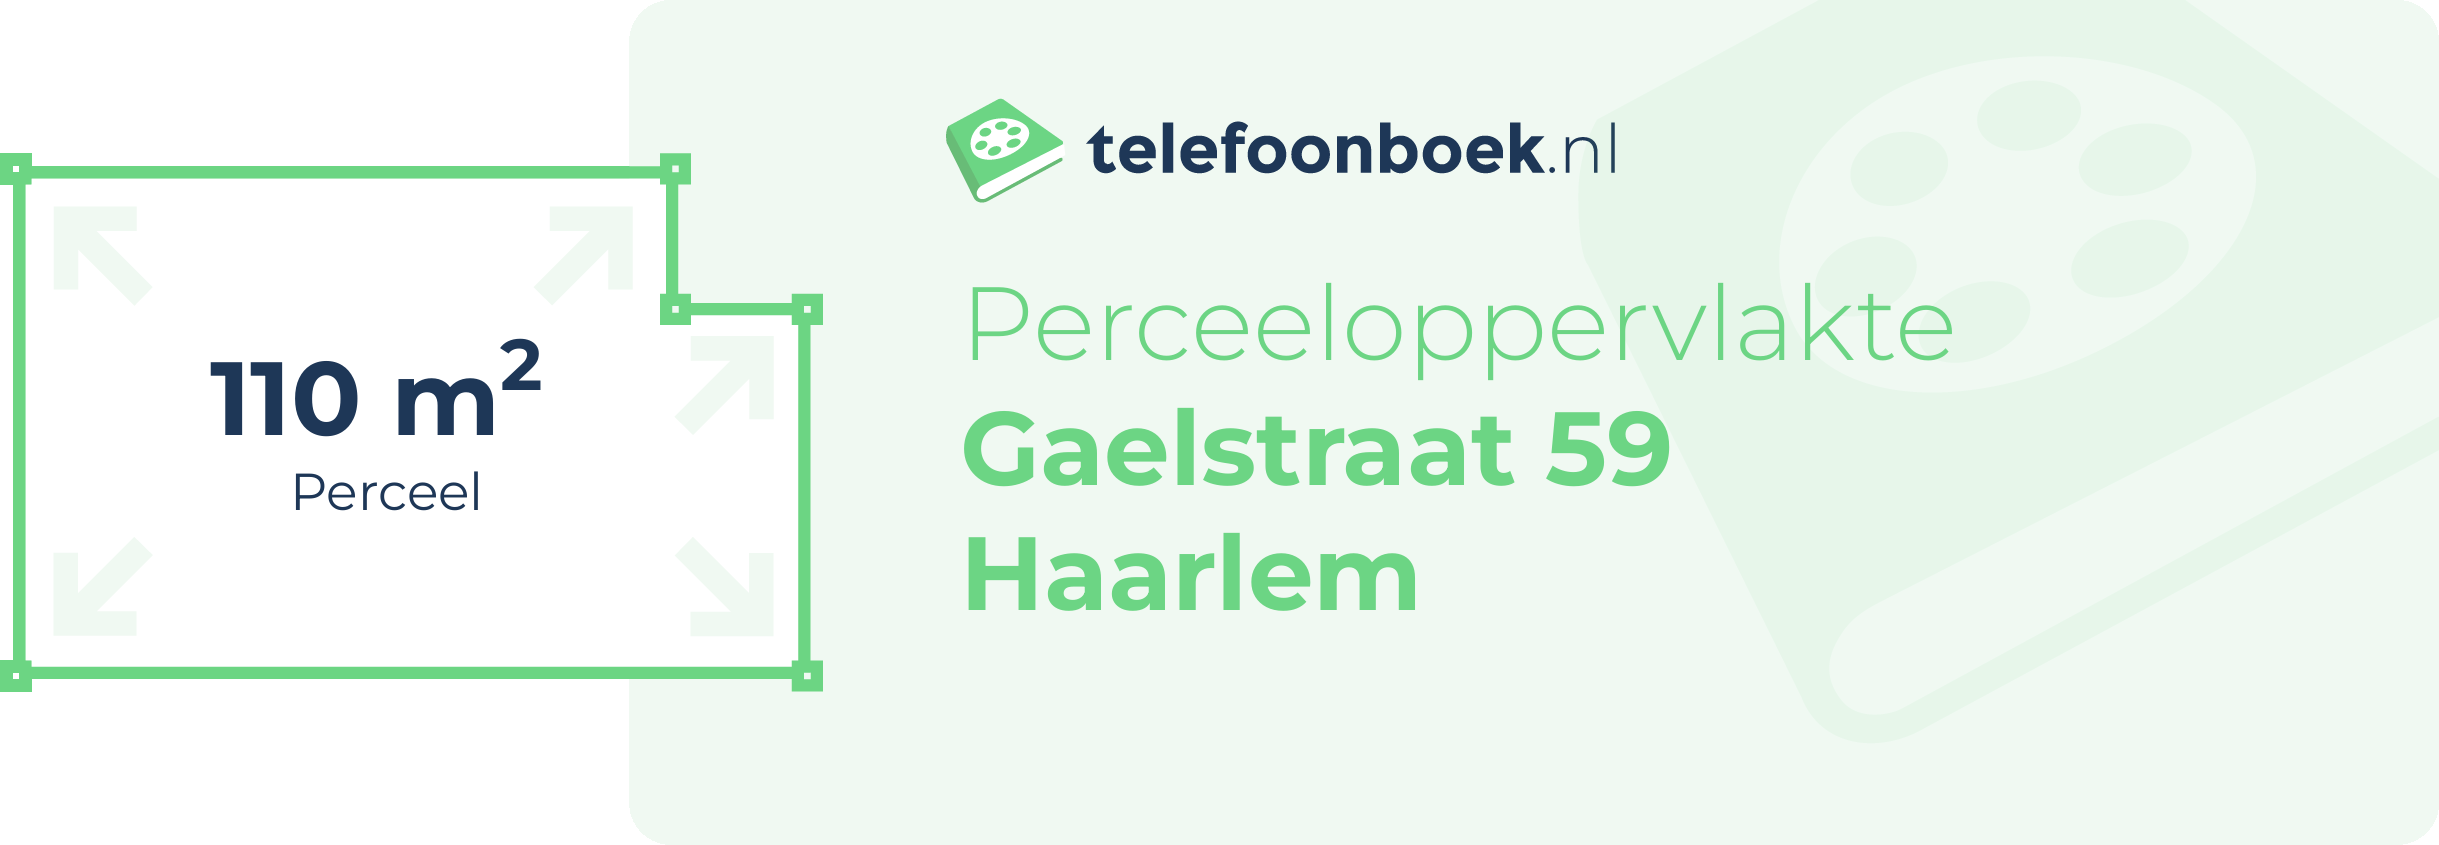 Perceeloppervlakte Gaelstraat 59 Haarlem